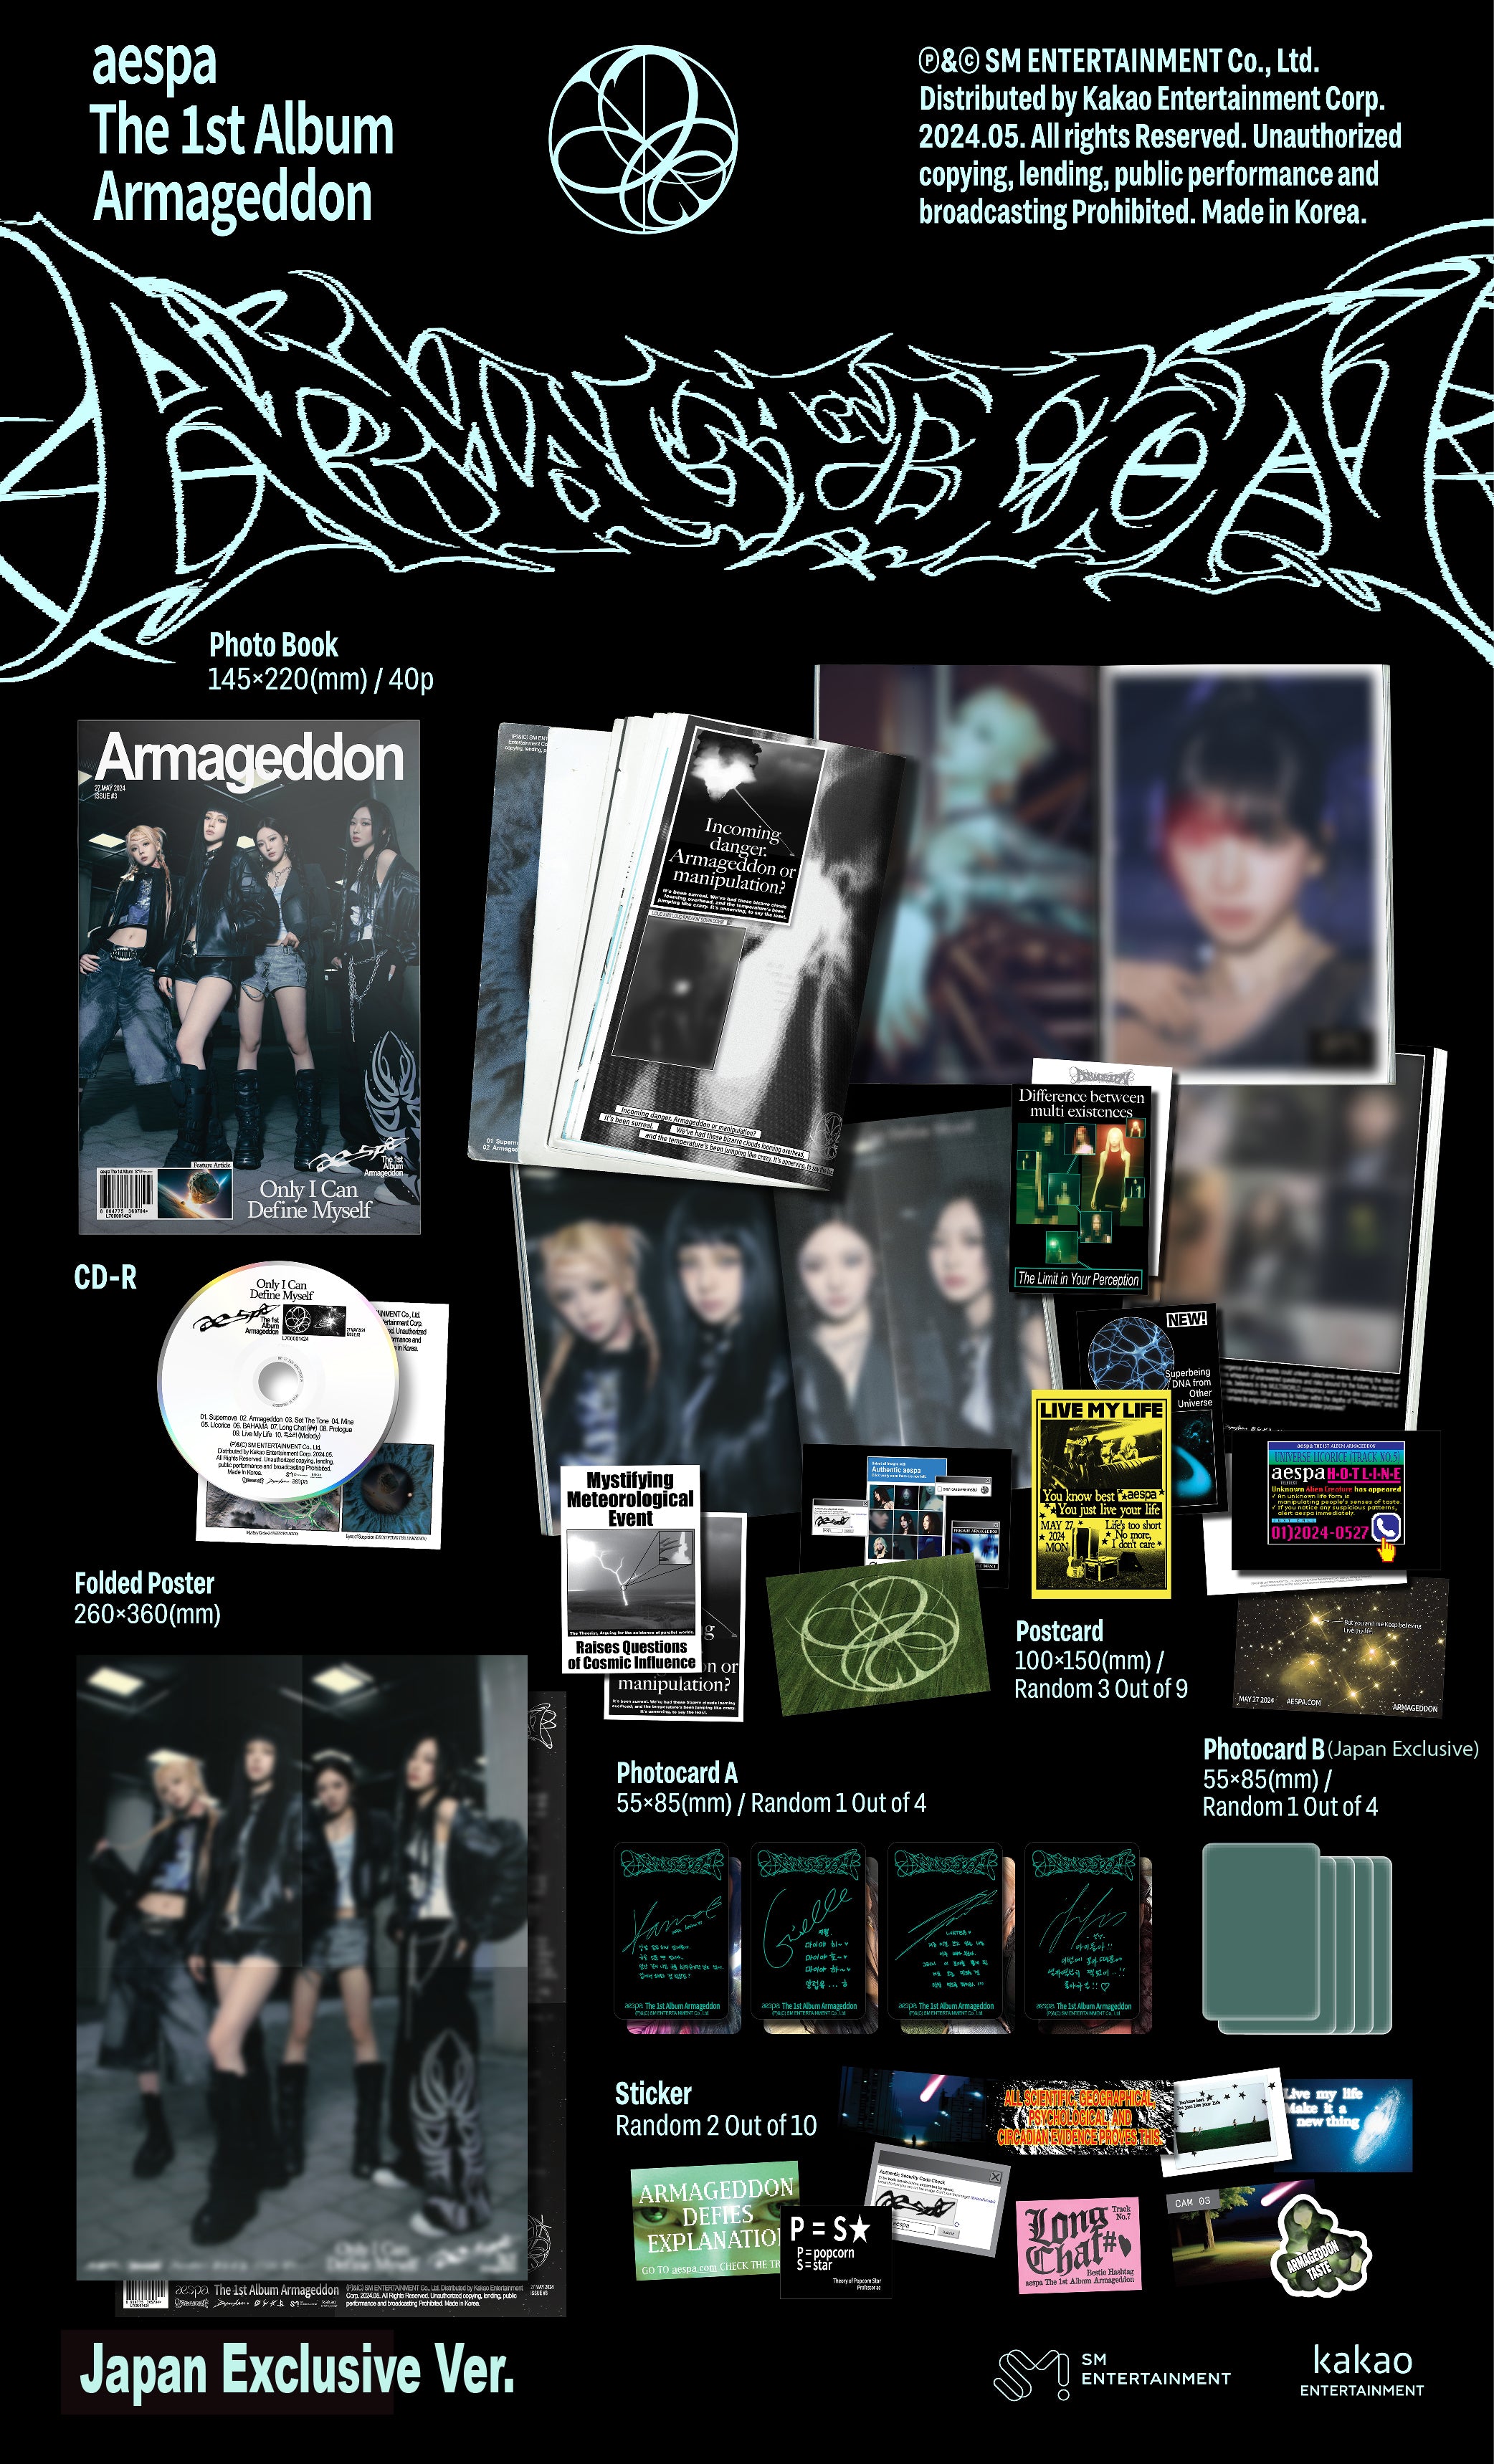 Armageddon (Japan Exclusive Ver.)＋Drama (Japan Exclusive ver.)+MY 